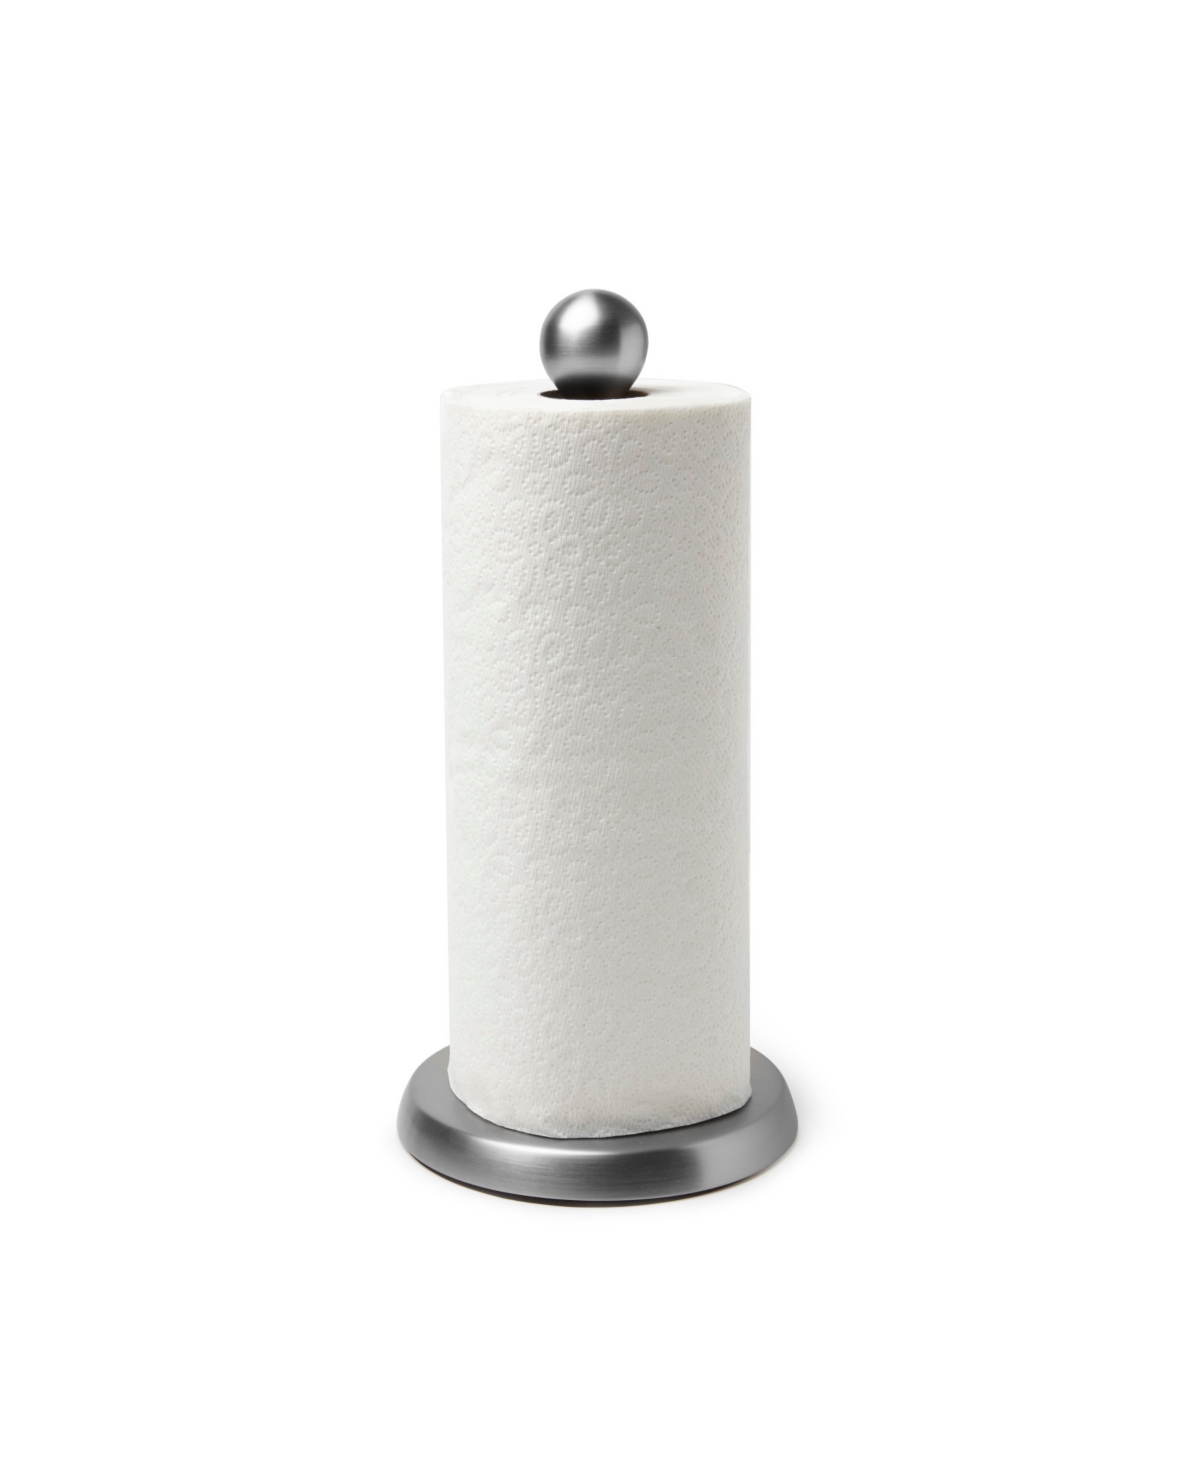 Teardrop Paper Towel Holder - Nickel